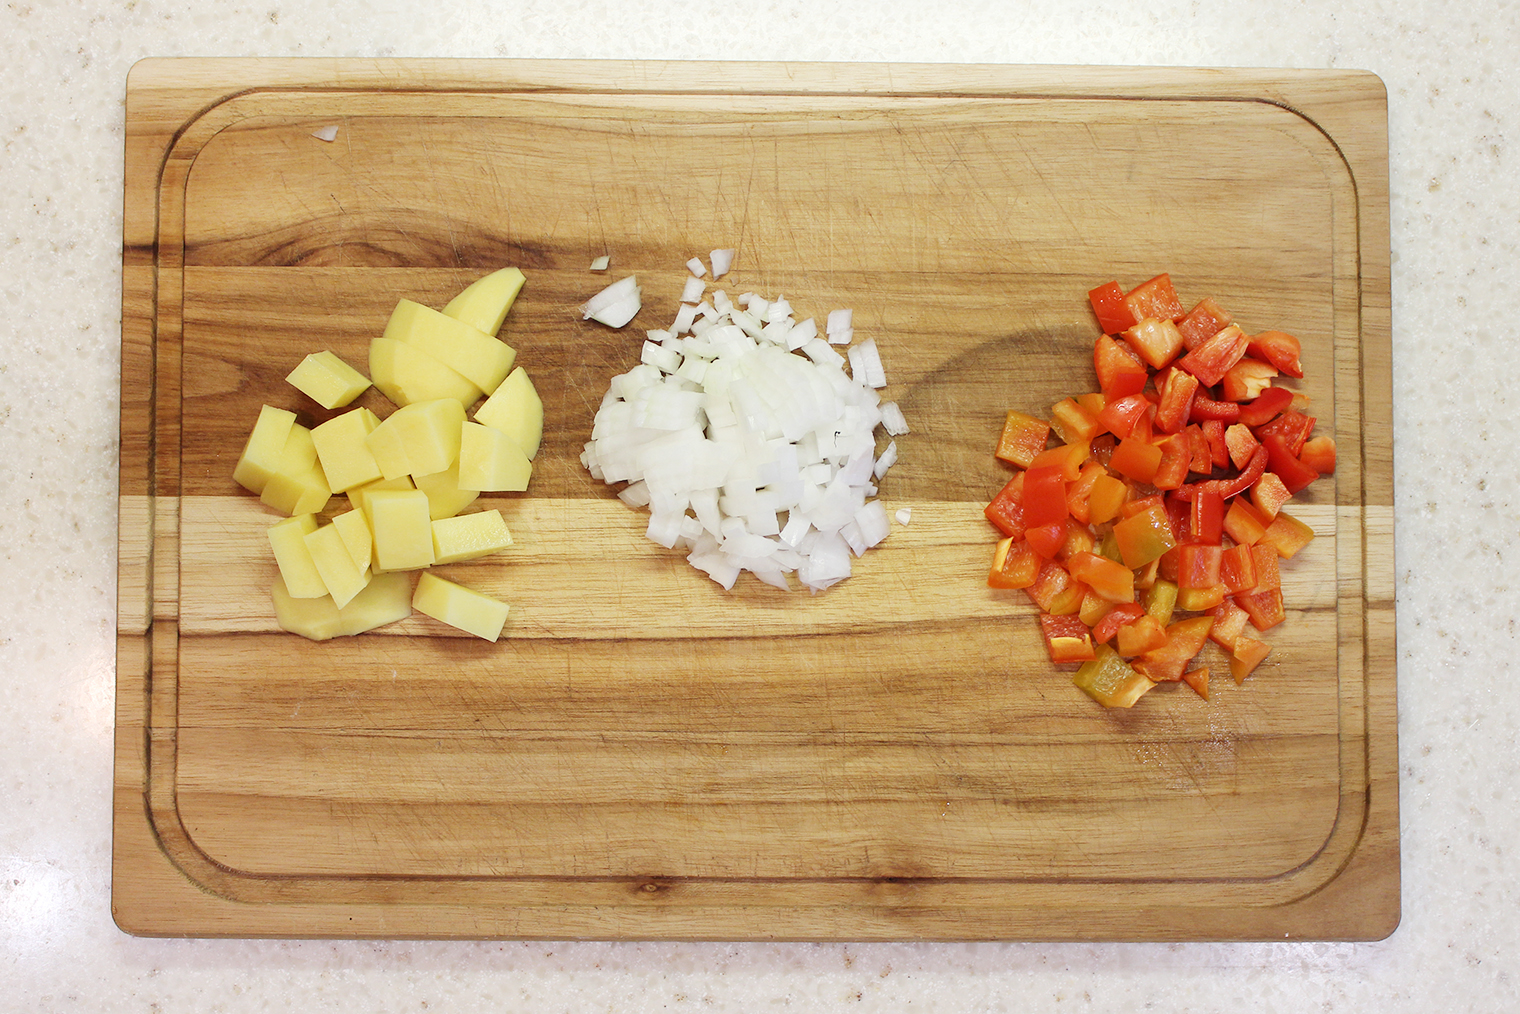 Остальные овощи нарезают мельче, чем картошку